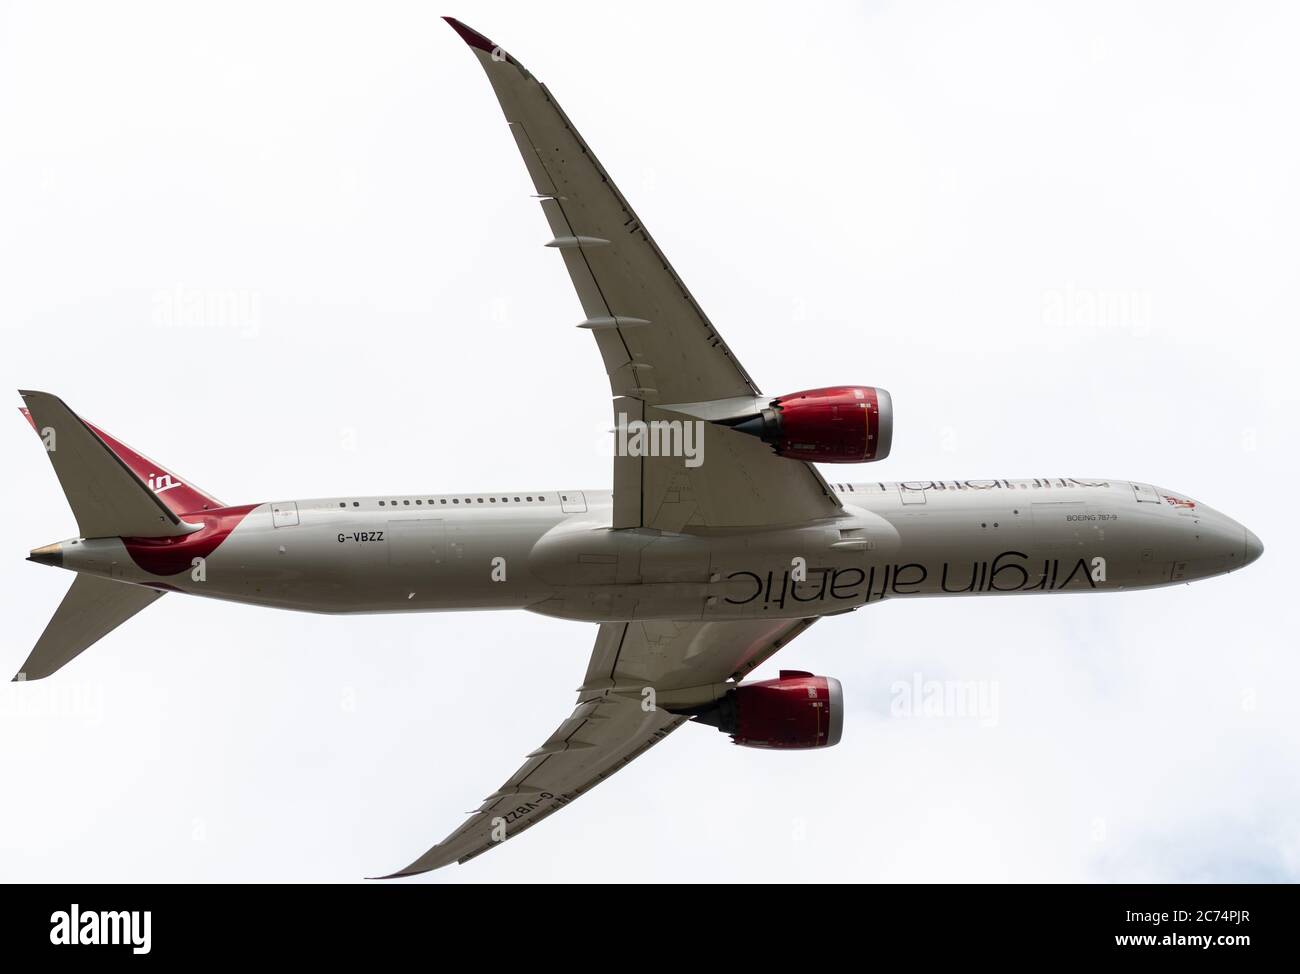 Heathrow, Royaume-Uni - août 03 2019 : enregistrement de Dreamliner G-VBZZ sur Virgin Atlantic Boeing 787-9, numéro de vol VS41, au départ de l'aéroport e de Heathrow Banque D'Images